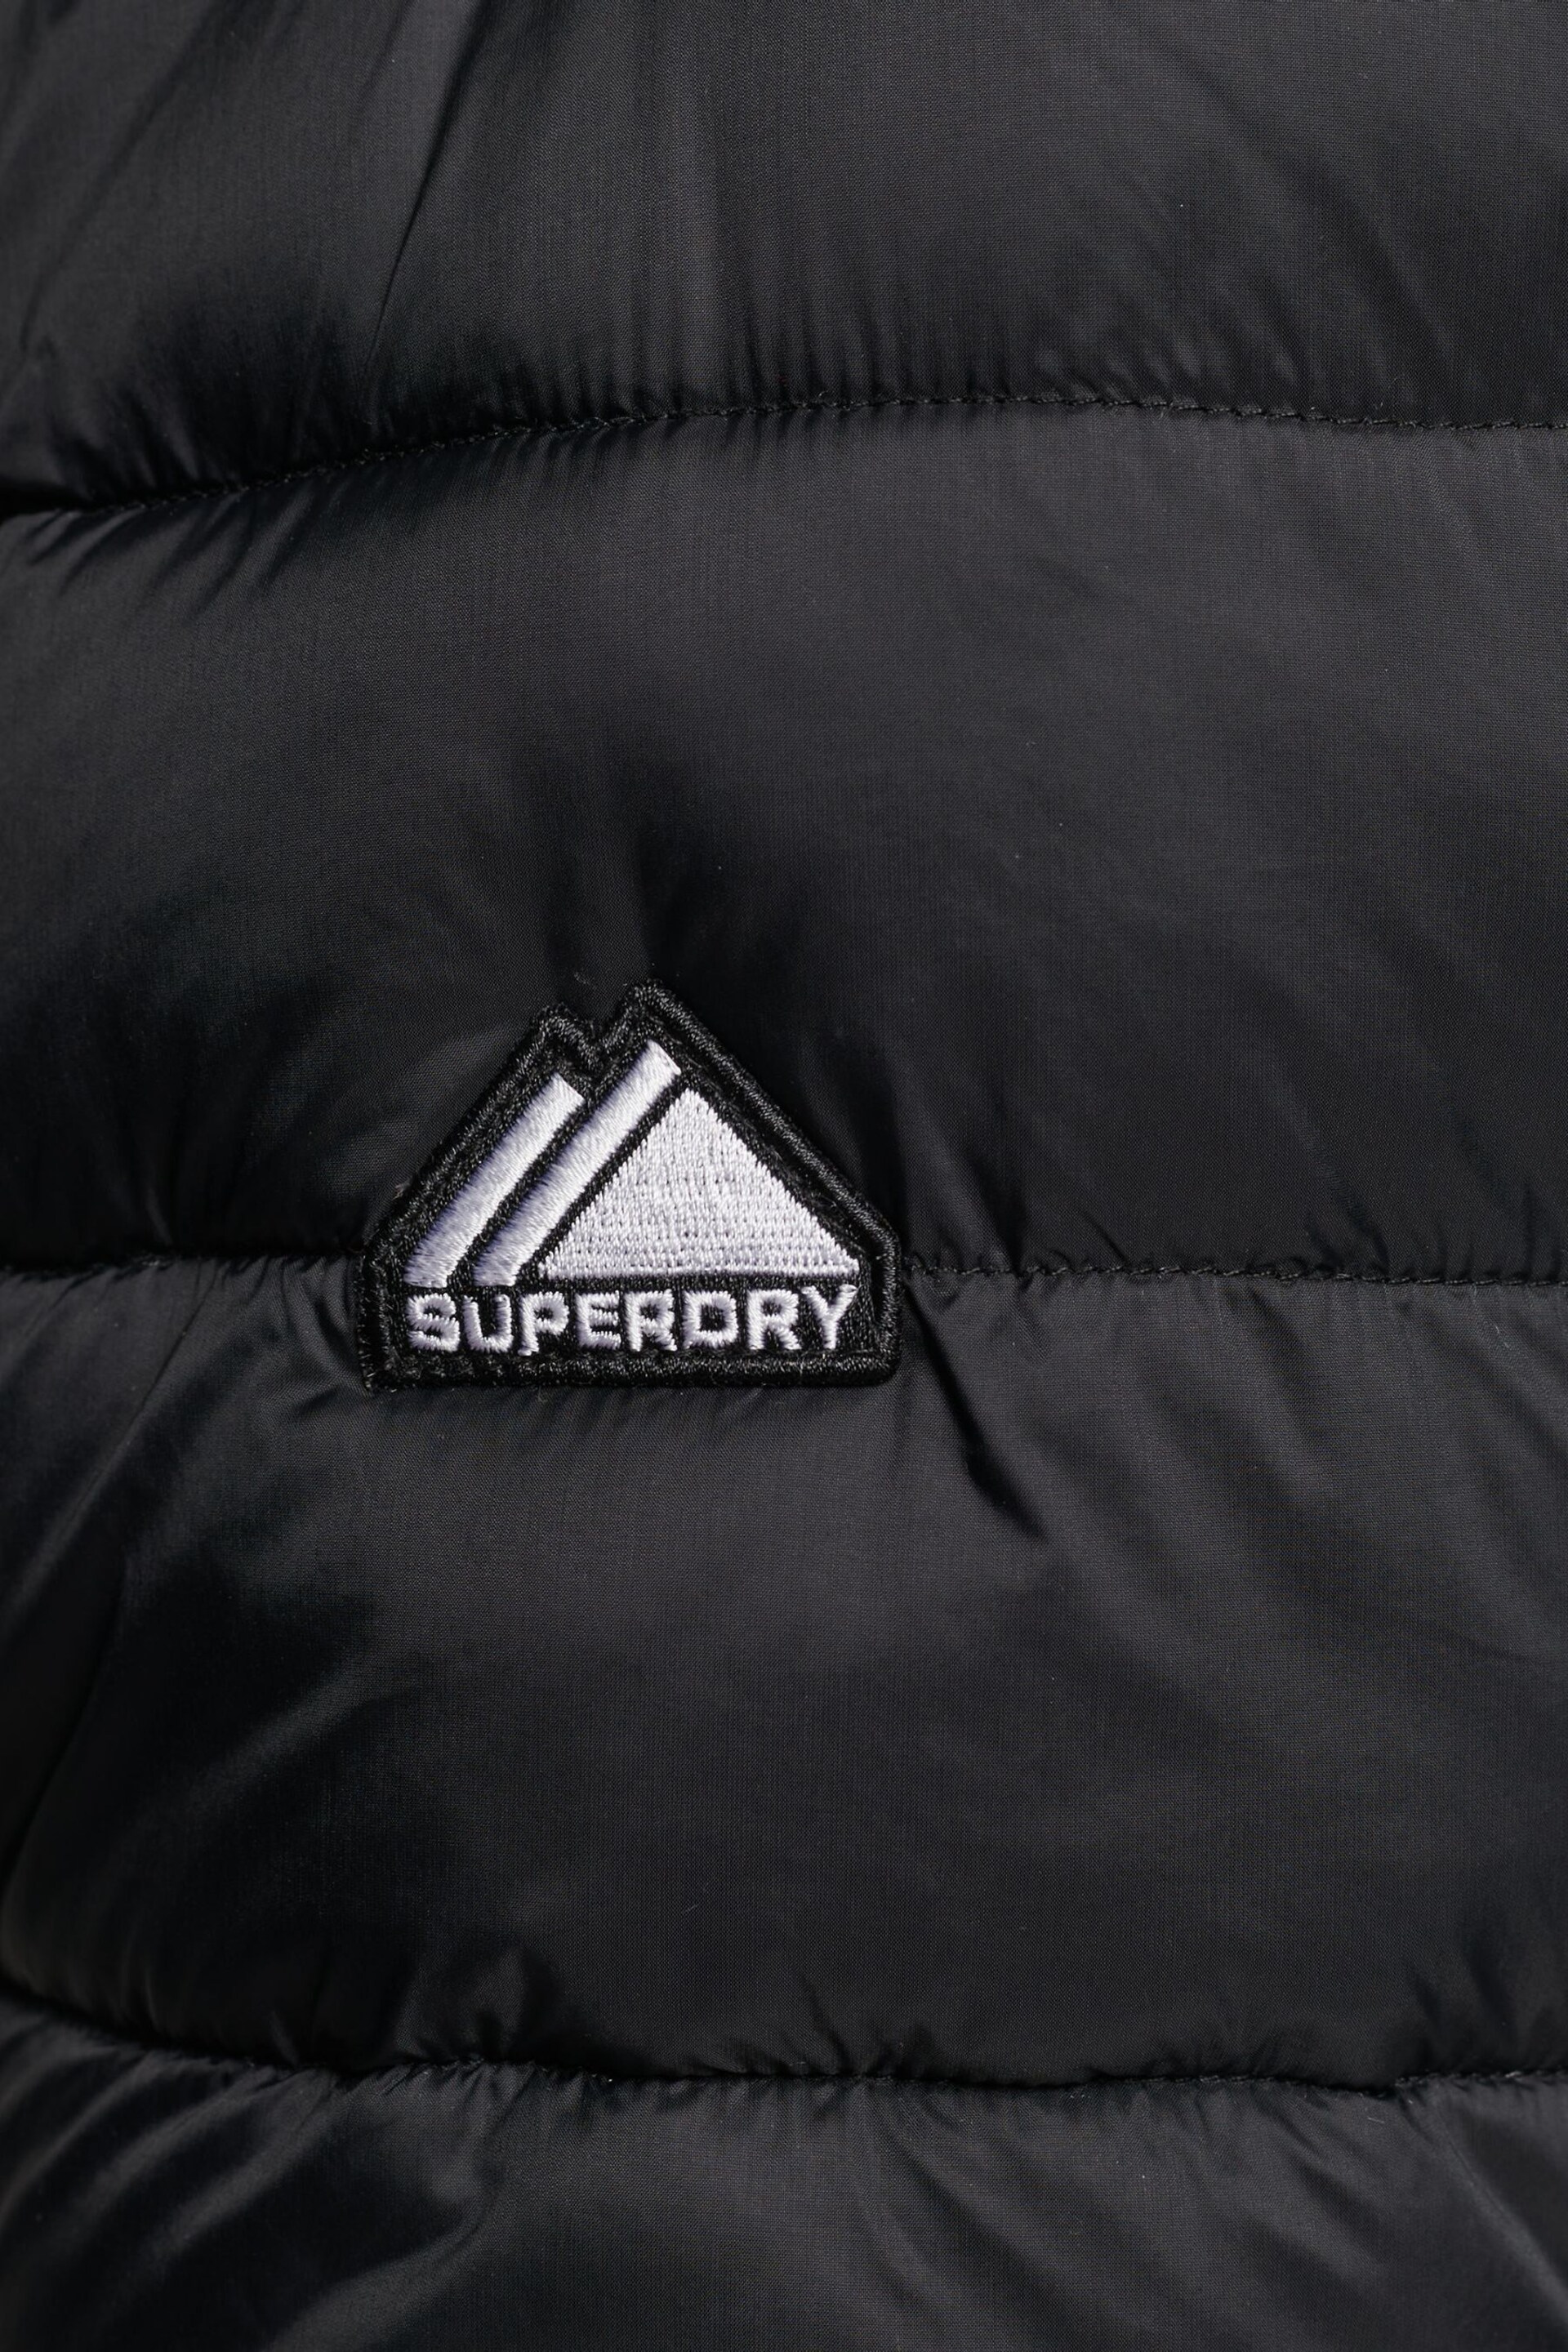 Superdry Black Classic Fuji Padded Jacket - Image 7 of 7